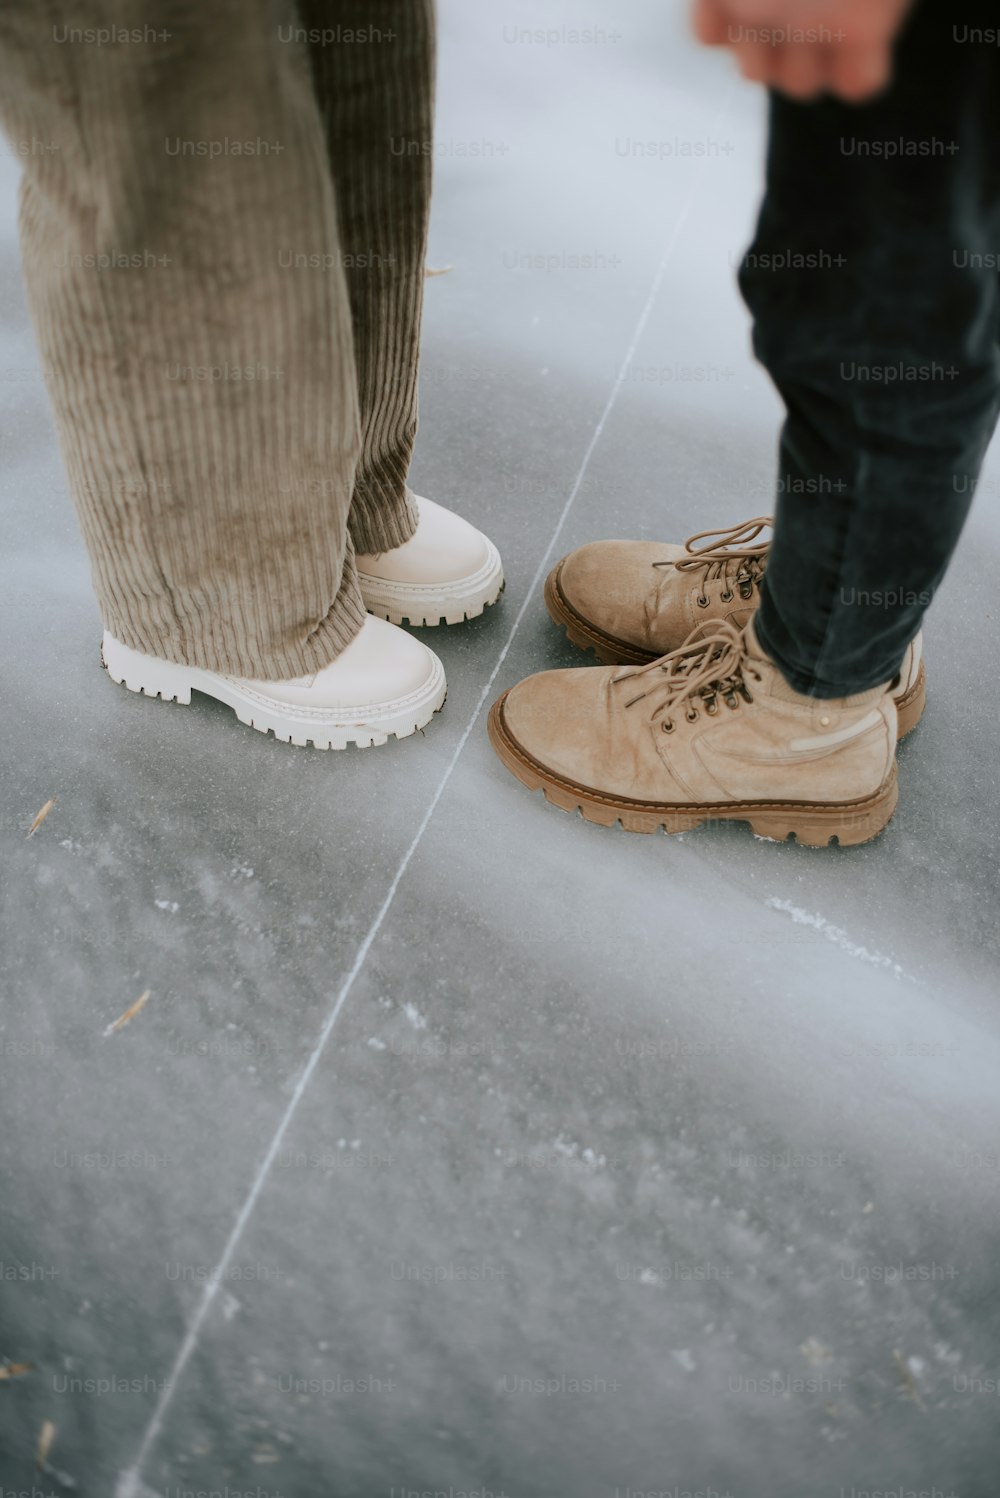 eine Person, die neben einer anderen Person steht und braune Schuhe trägt